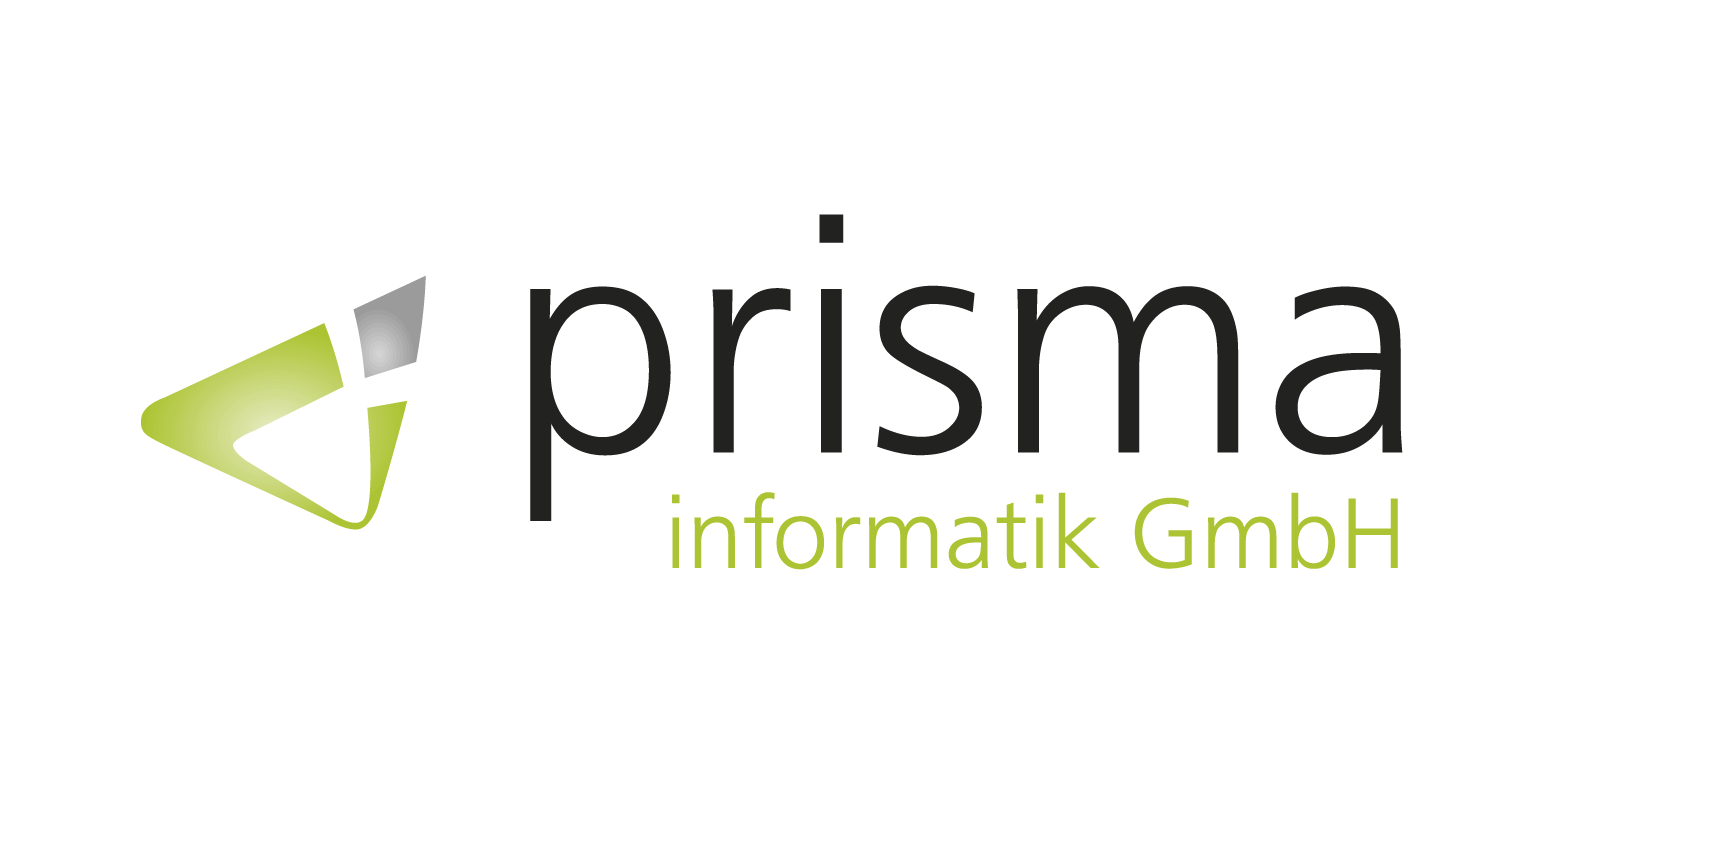 prisma informatik GmbH_logo